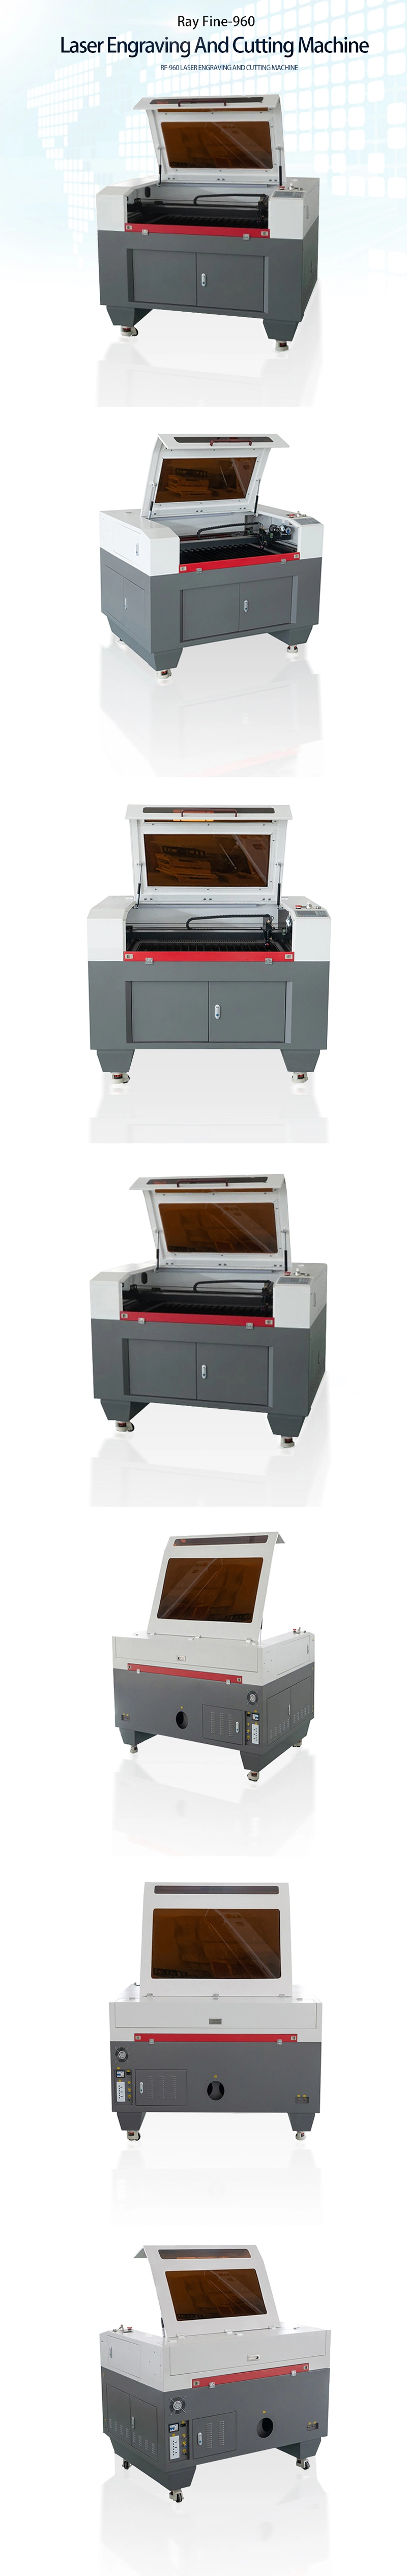 9060 Laser Cutting Machine CO2 Laser Engraving Machine 6090 CO2 Mini Desktop Laser Engraver Cutter Machine